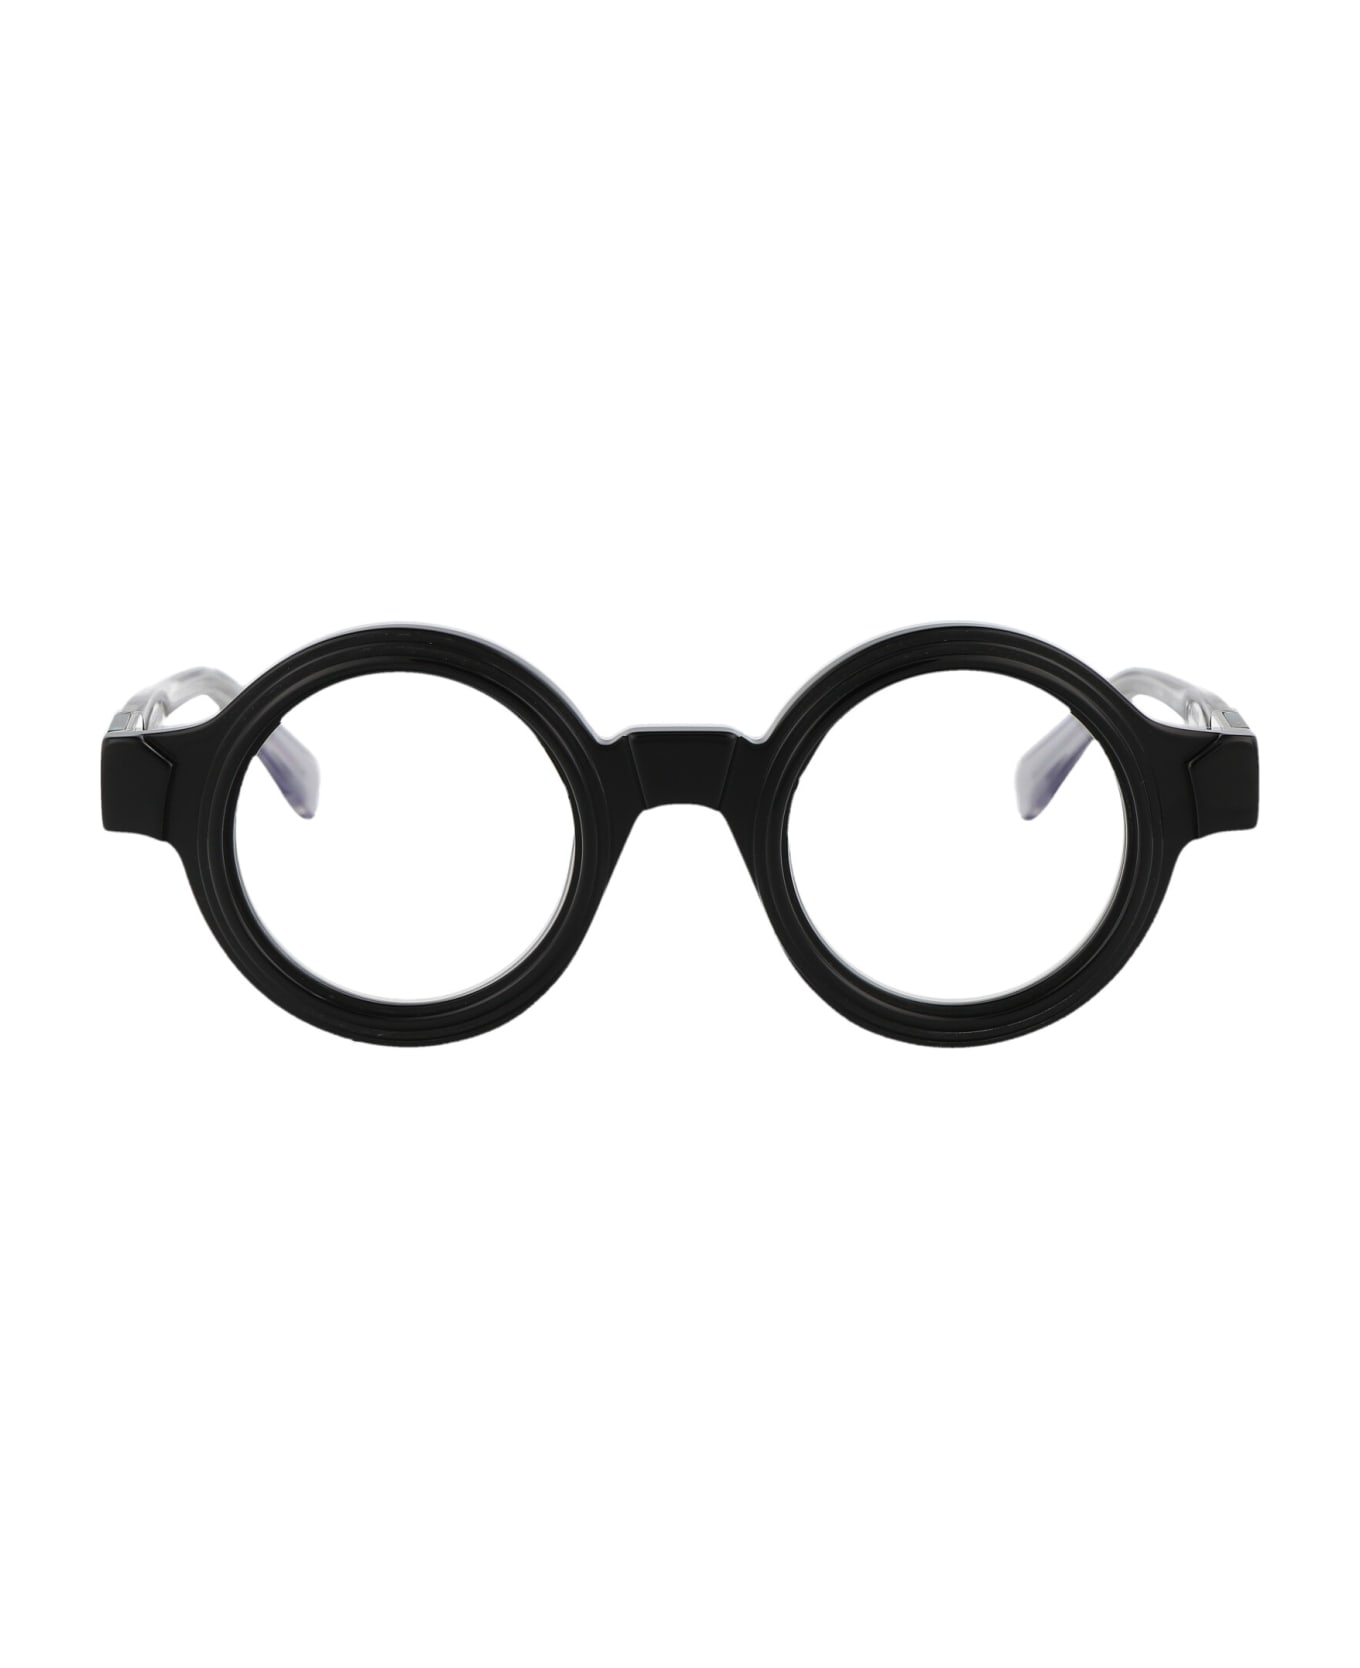 Kuboraum Maske S2 Glasses - BSG black アイウェア